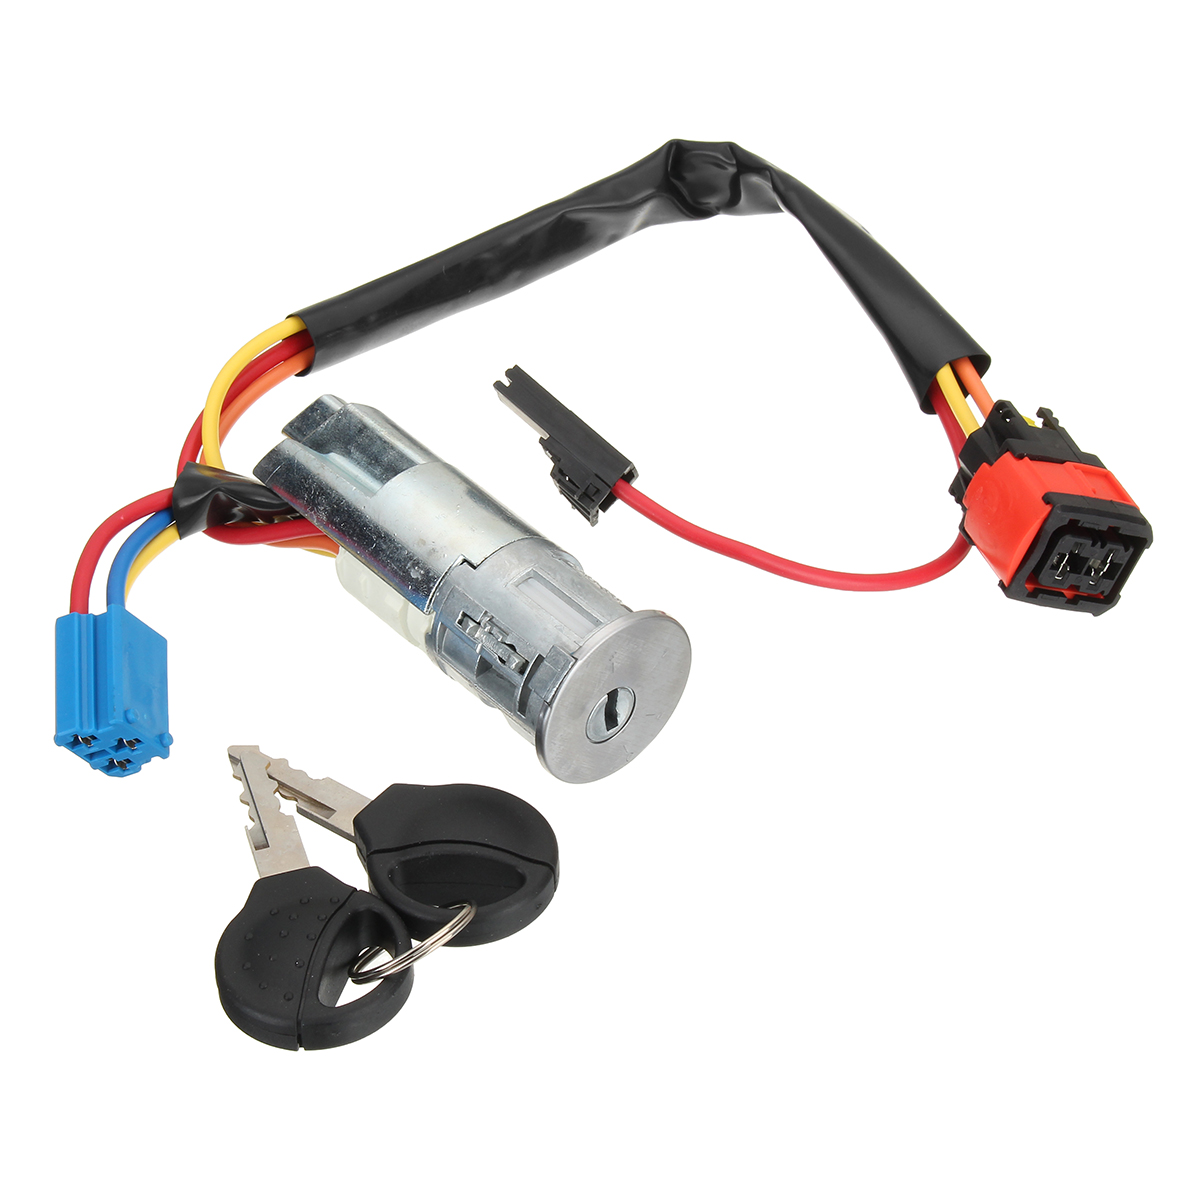 

Ignition Switch Starter Barrel Lock Keys for Peugeot 206 for Citroen Picasso Xsara 4162P0